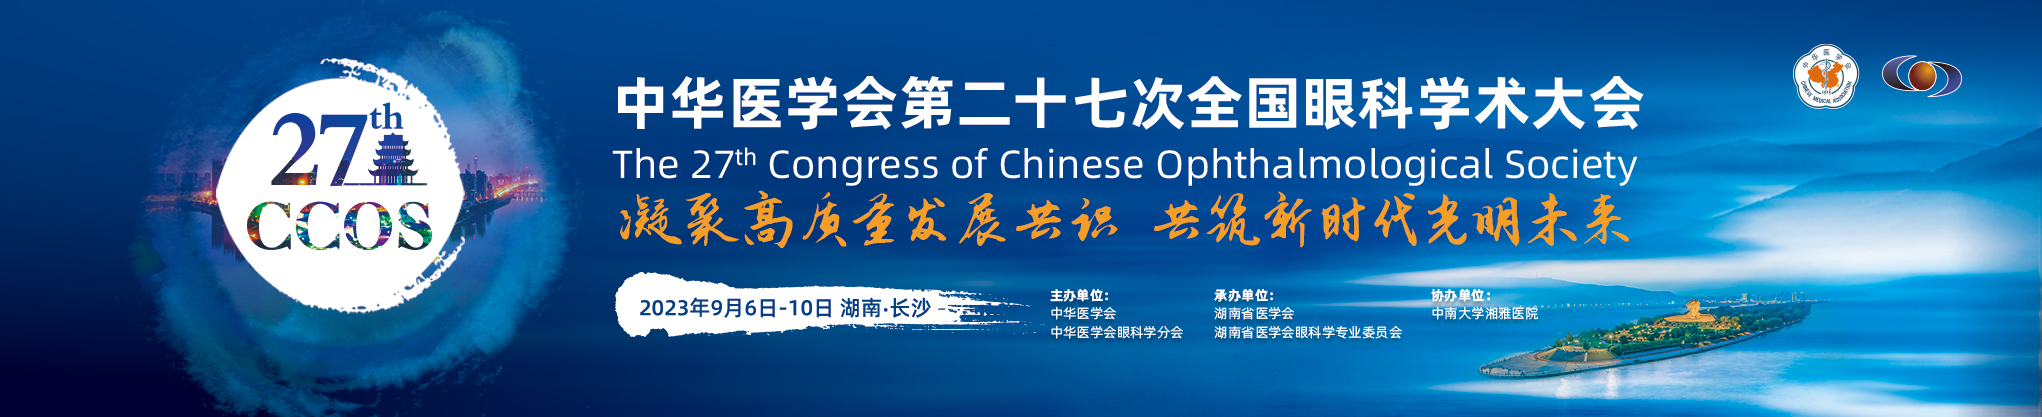 中华医学会第二十七次全国眼科学术大会